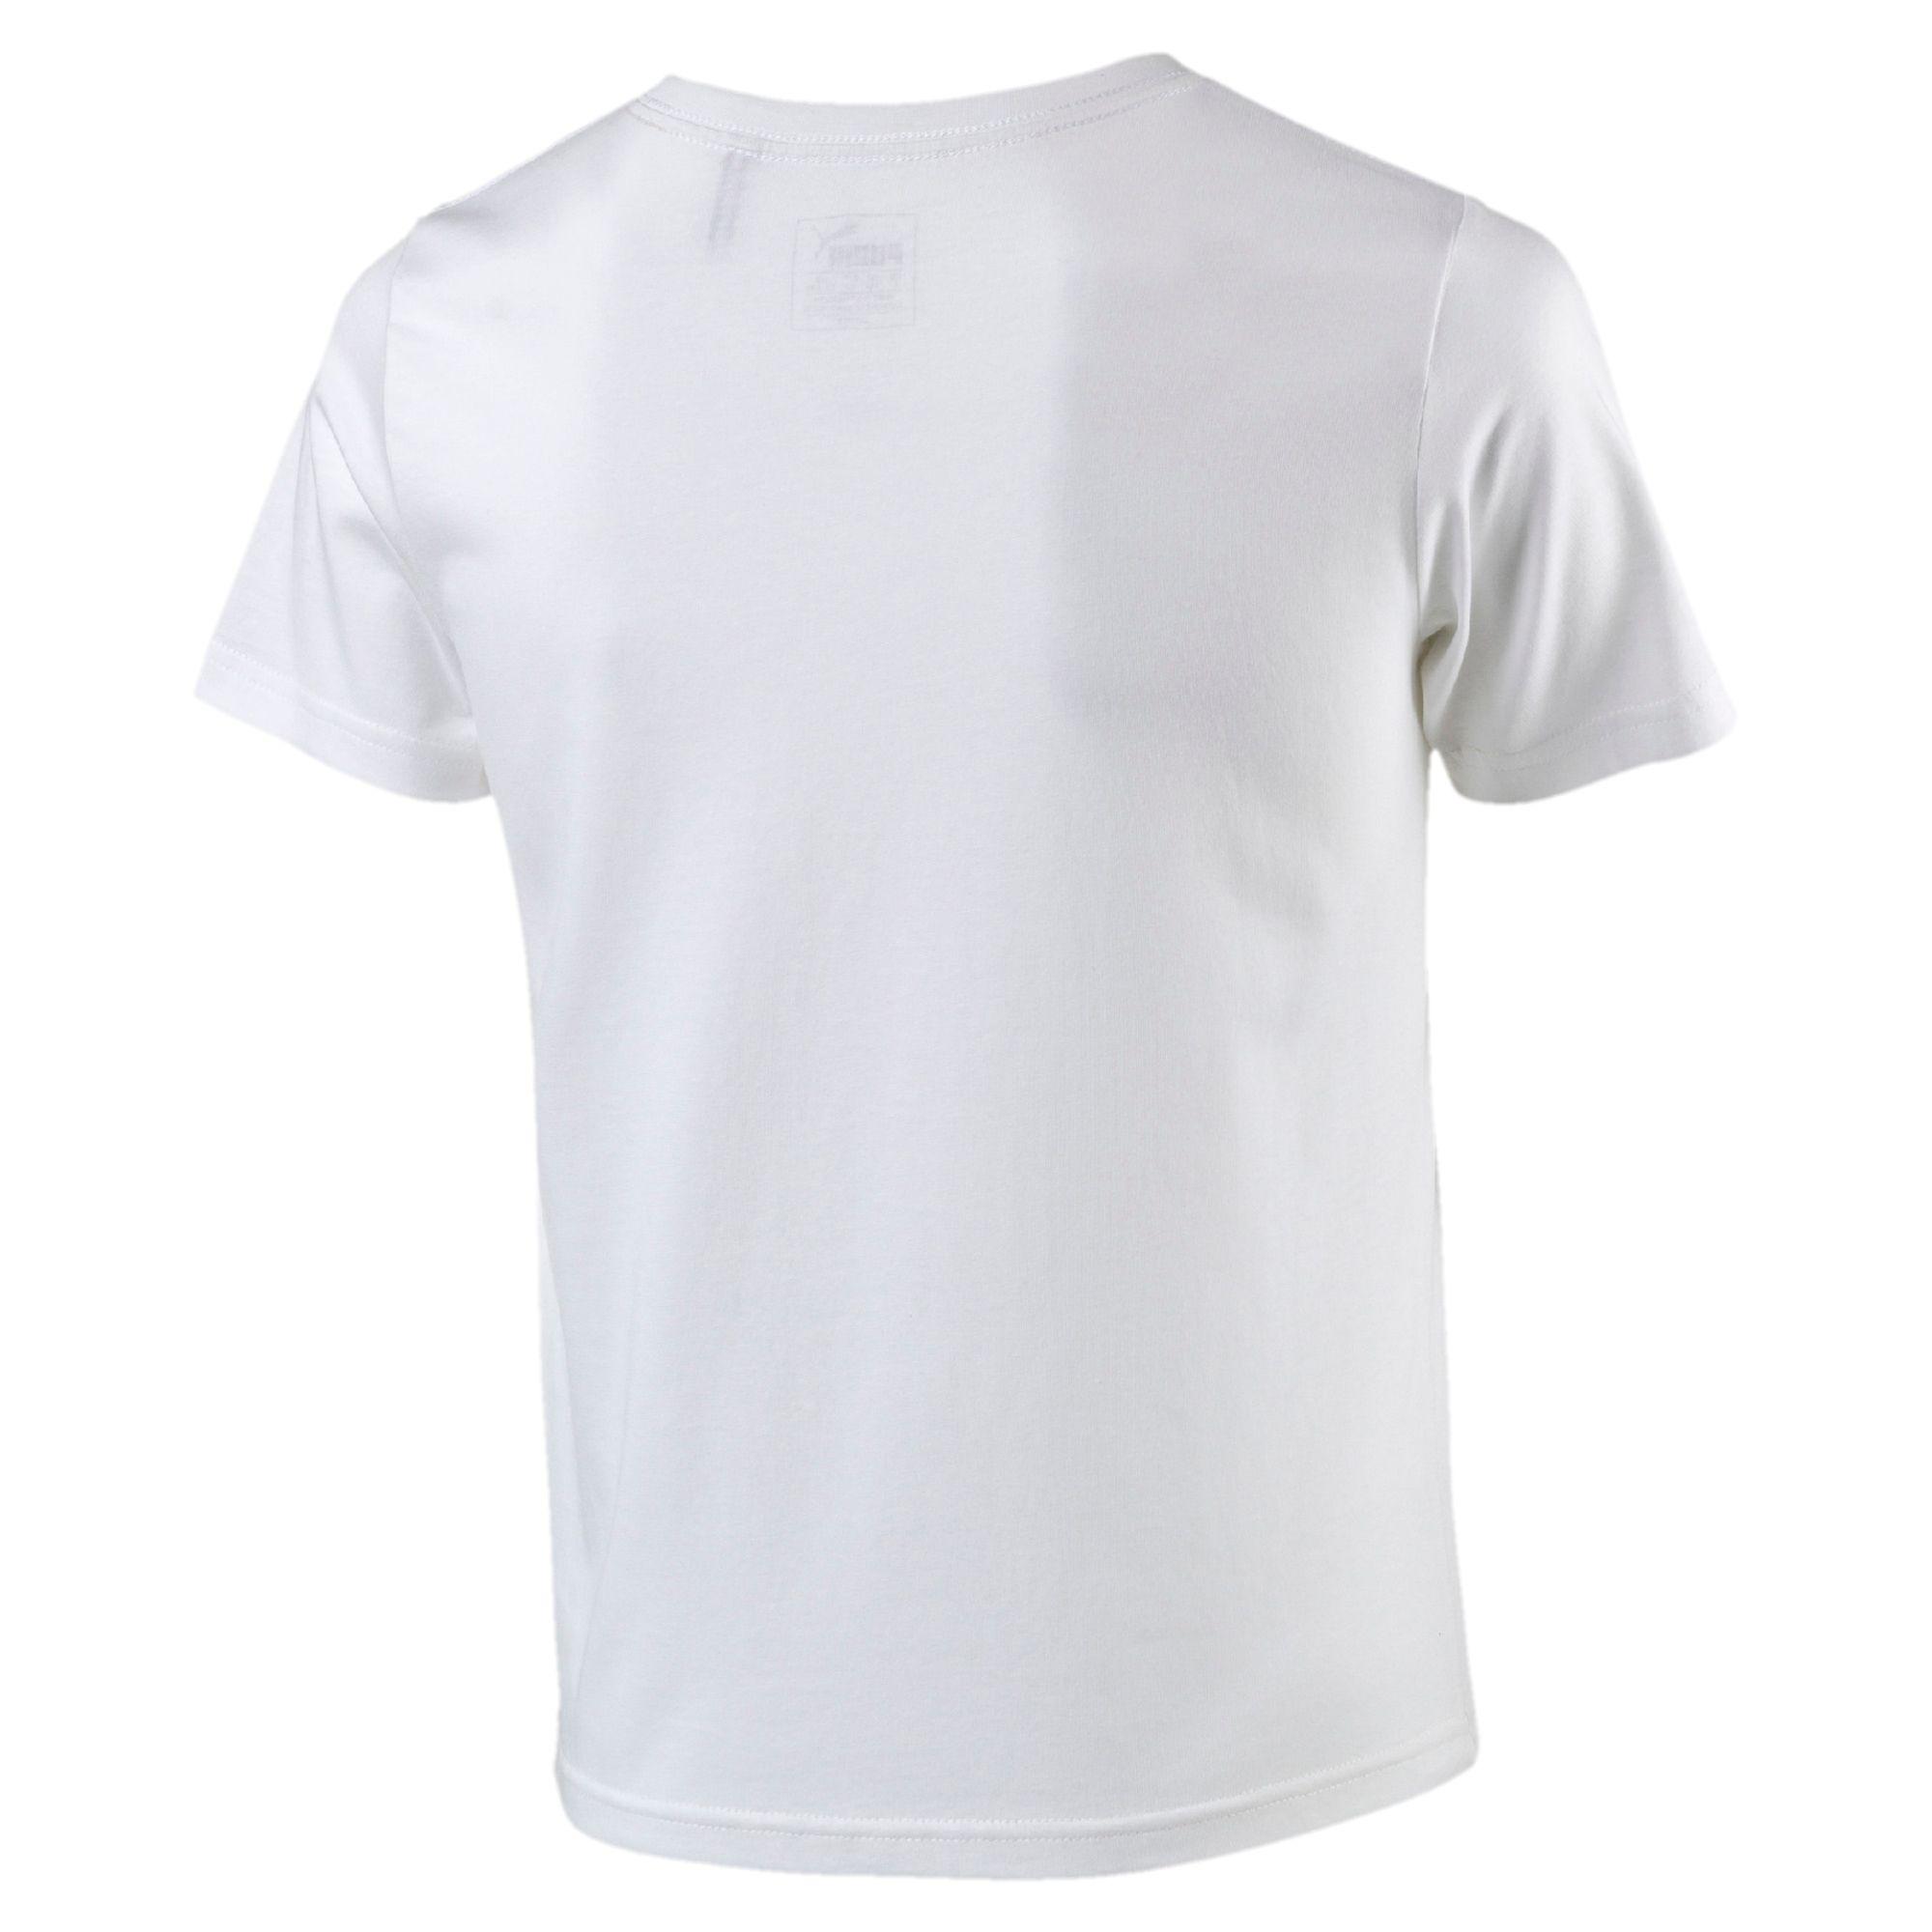 mFGP Logo - Promotions Puma T-Shirt Boys Boys Logo White | MFGP